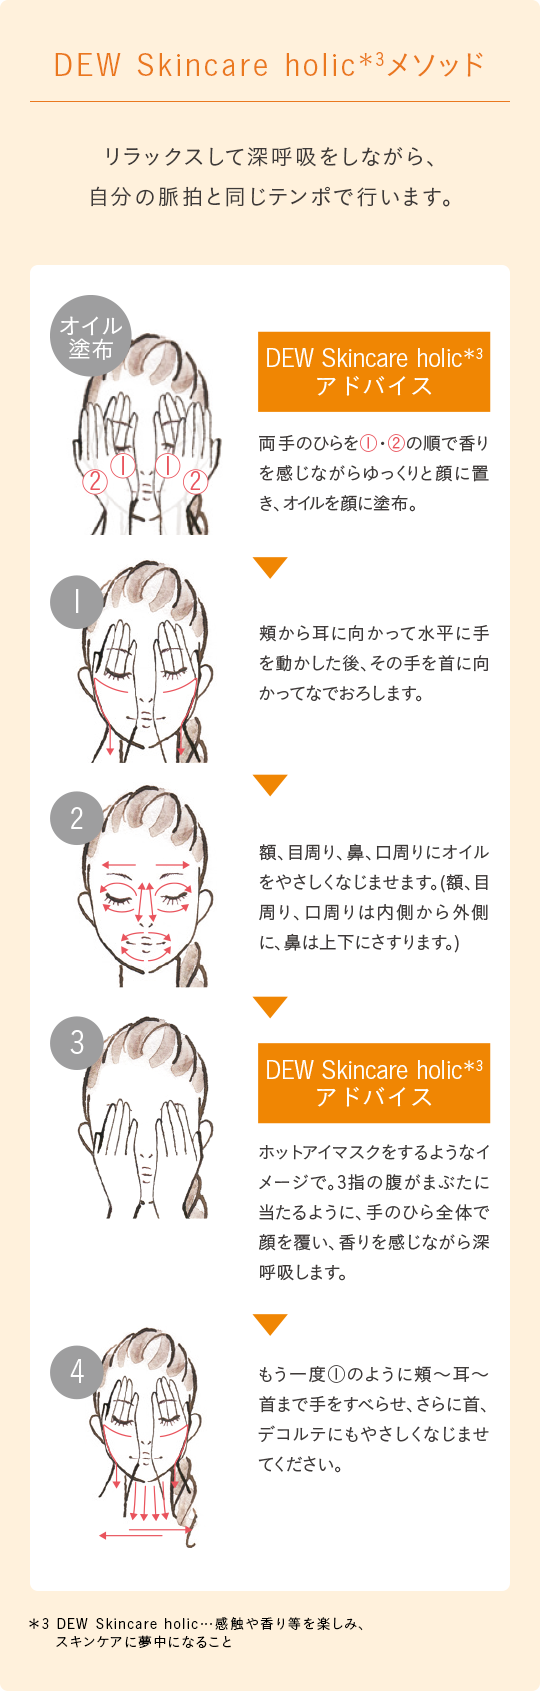 ウォームヒュッゲオイル | DEW Skincare Holic | カネボウ化粧品